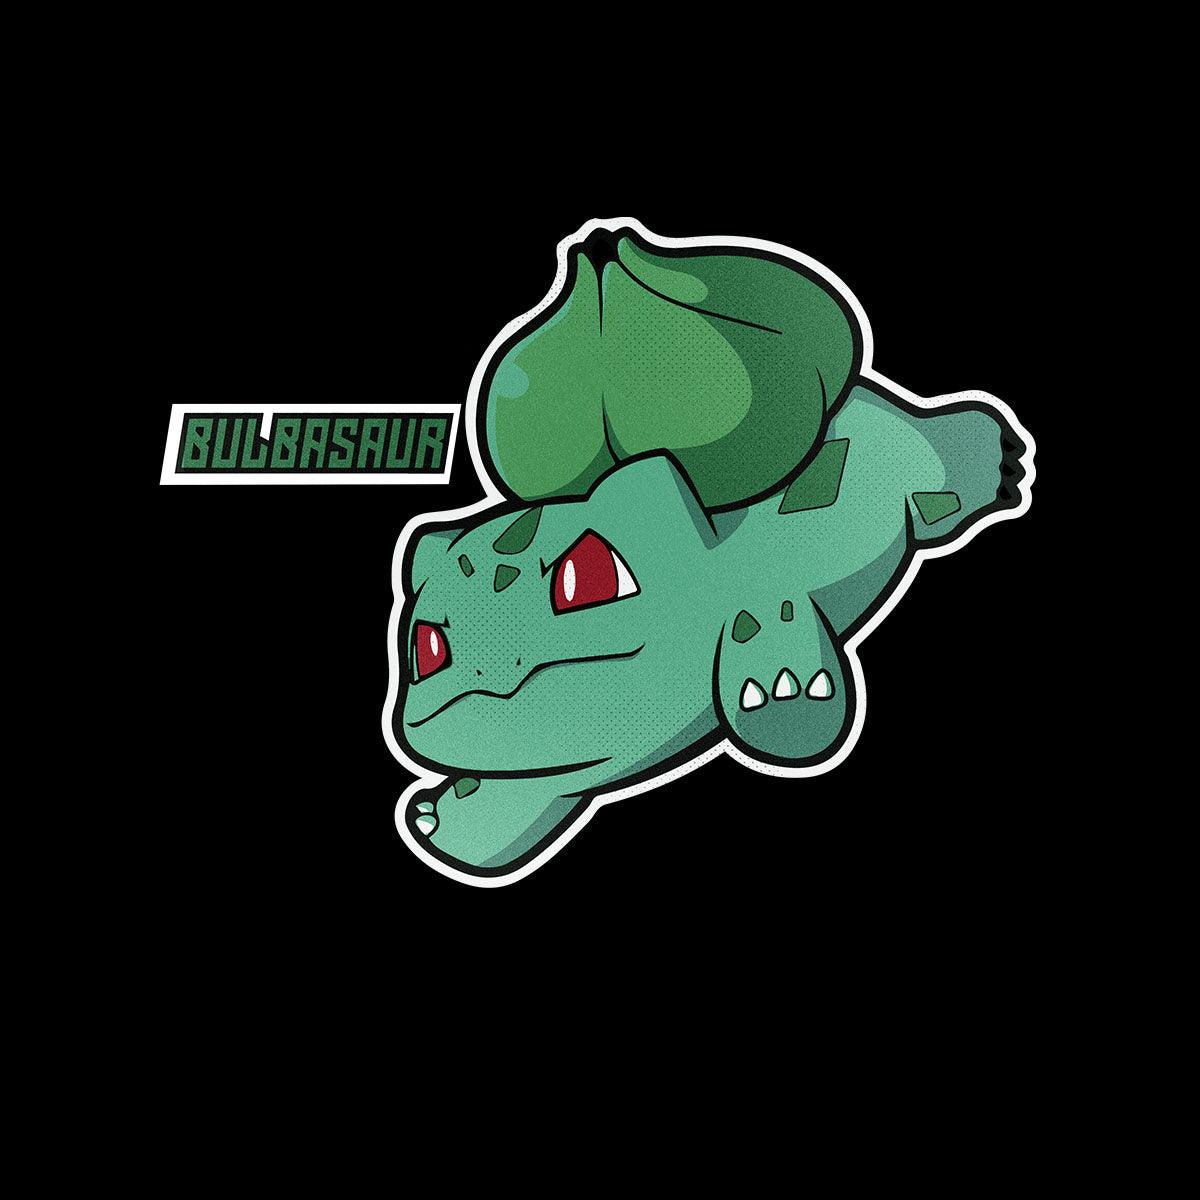 Lindo Bulbasaur!!! Pokémon Go.